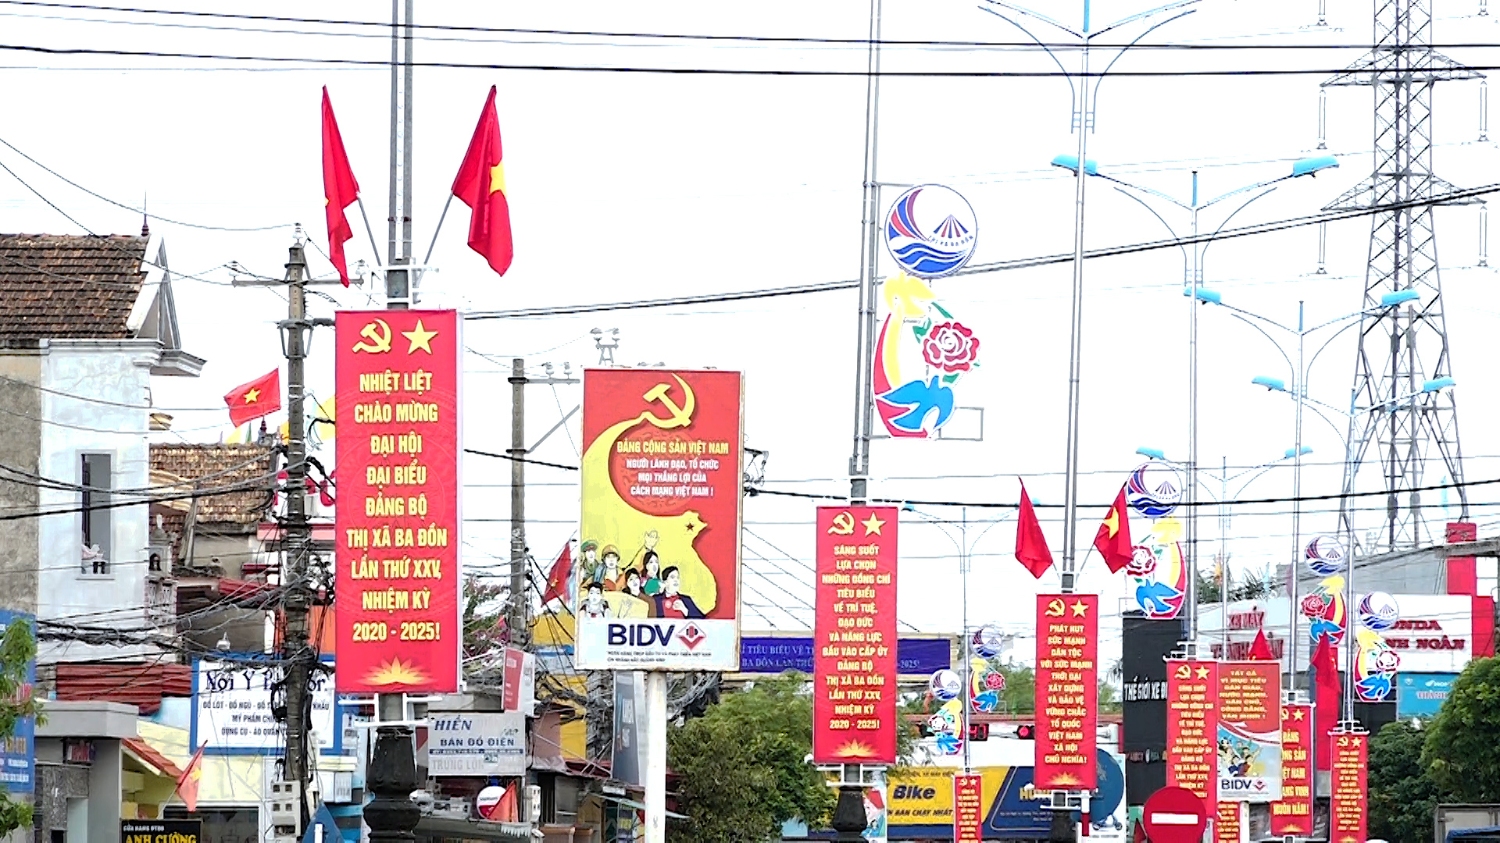 Thị xã Ba Đồn treo cờ băng rôn chào mừng đại hội Đảng bộ thị xã Ba Đồn lần thứ XXV